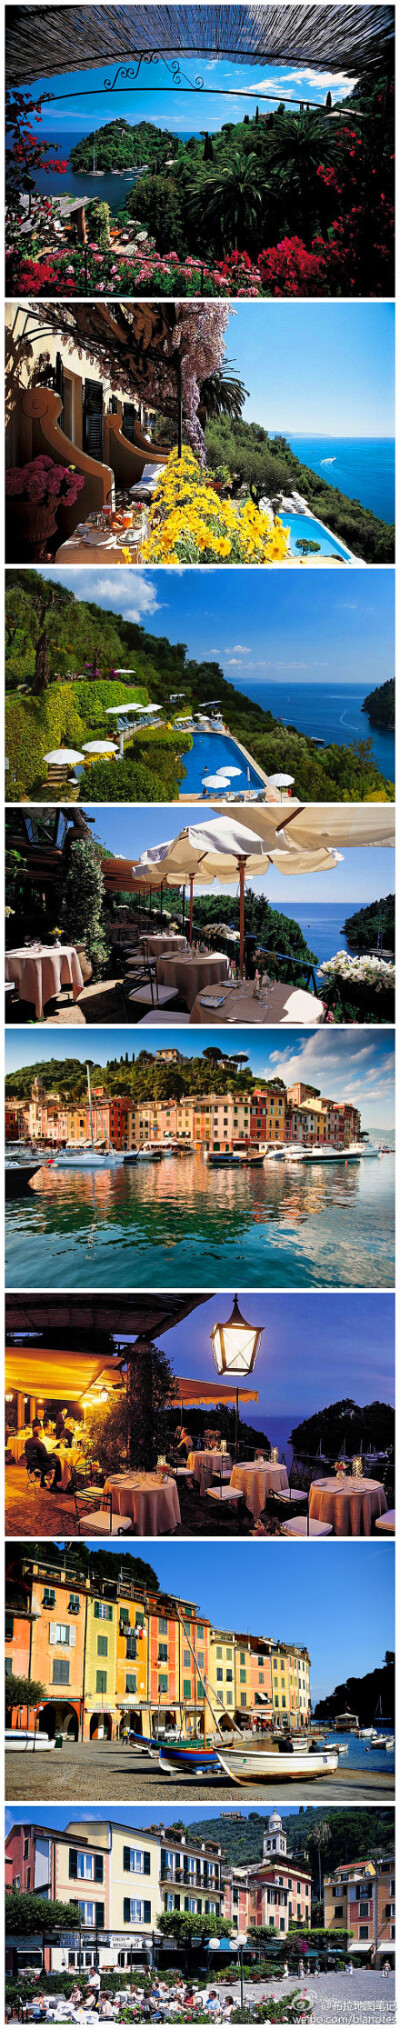 【最地中海的滨海小镇】这里是意大利的Portofino，号称地中海第一小镇。著名酒店Splendido俯瞰着此地最美的港湾，每扇窗户都能看到地中海那醉人的蓝！因这举世无双的美景，伊丽莎白泰勒、克拉克盖博都曾在此流连………